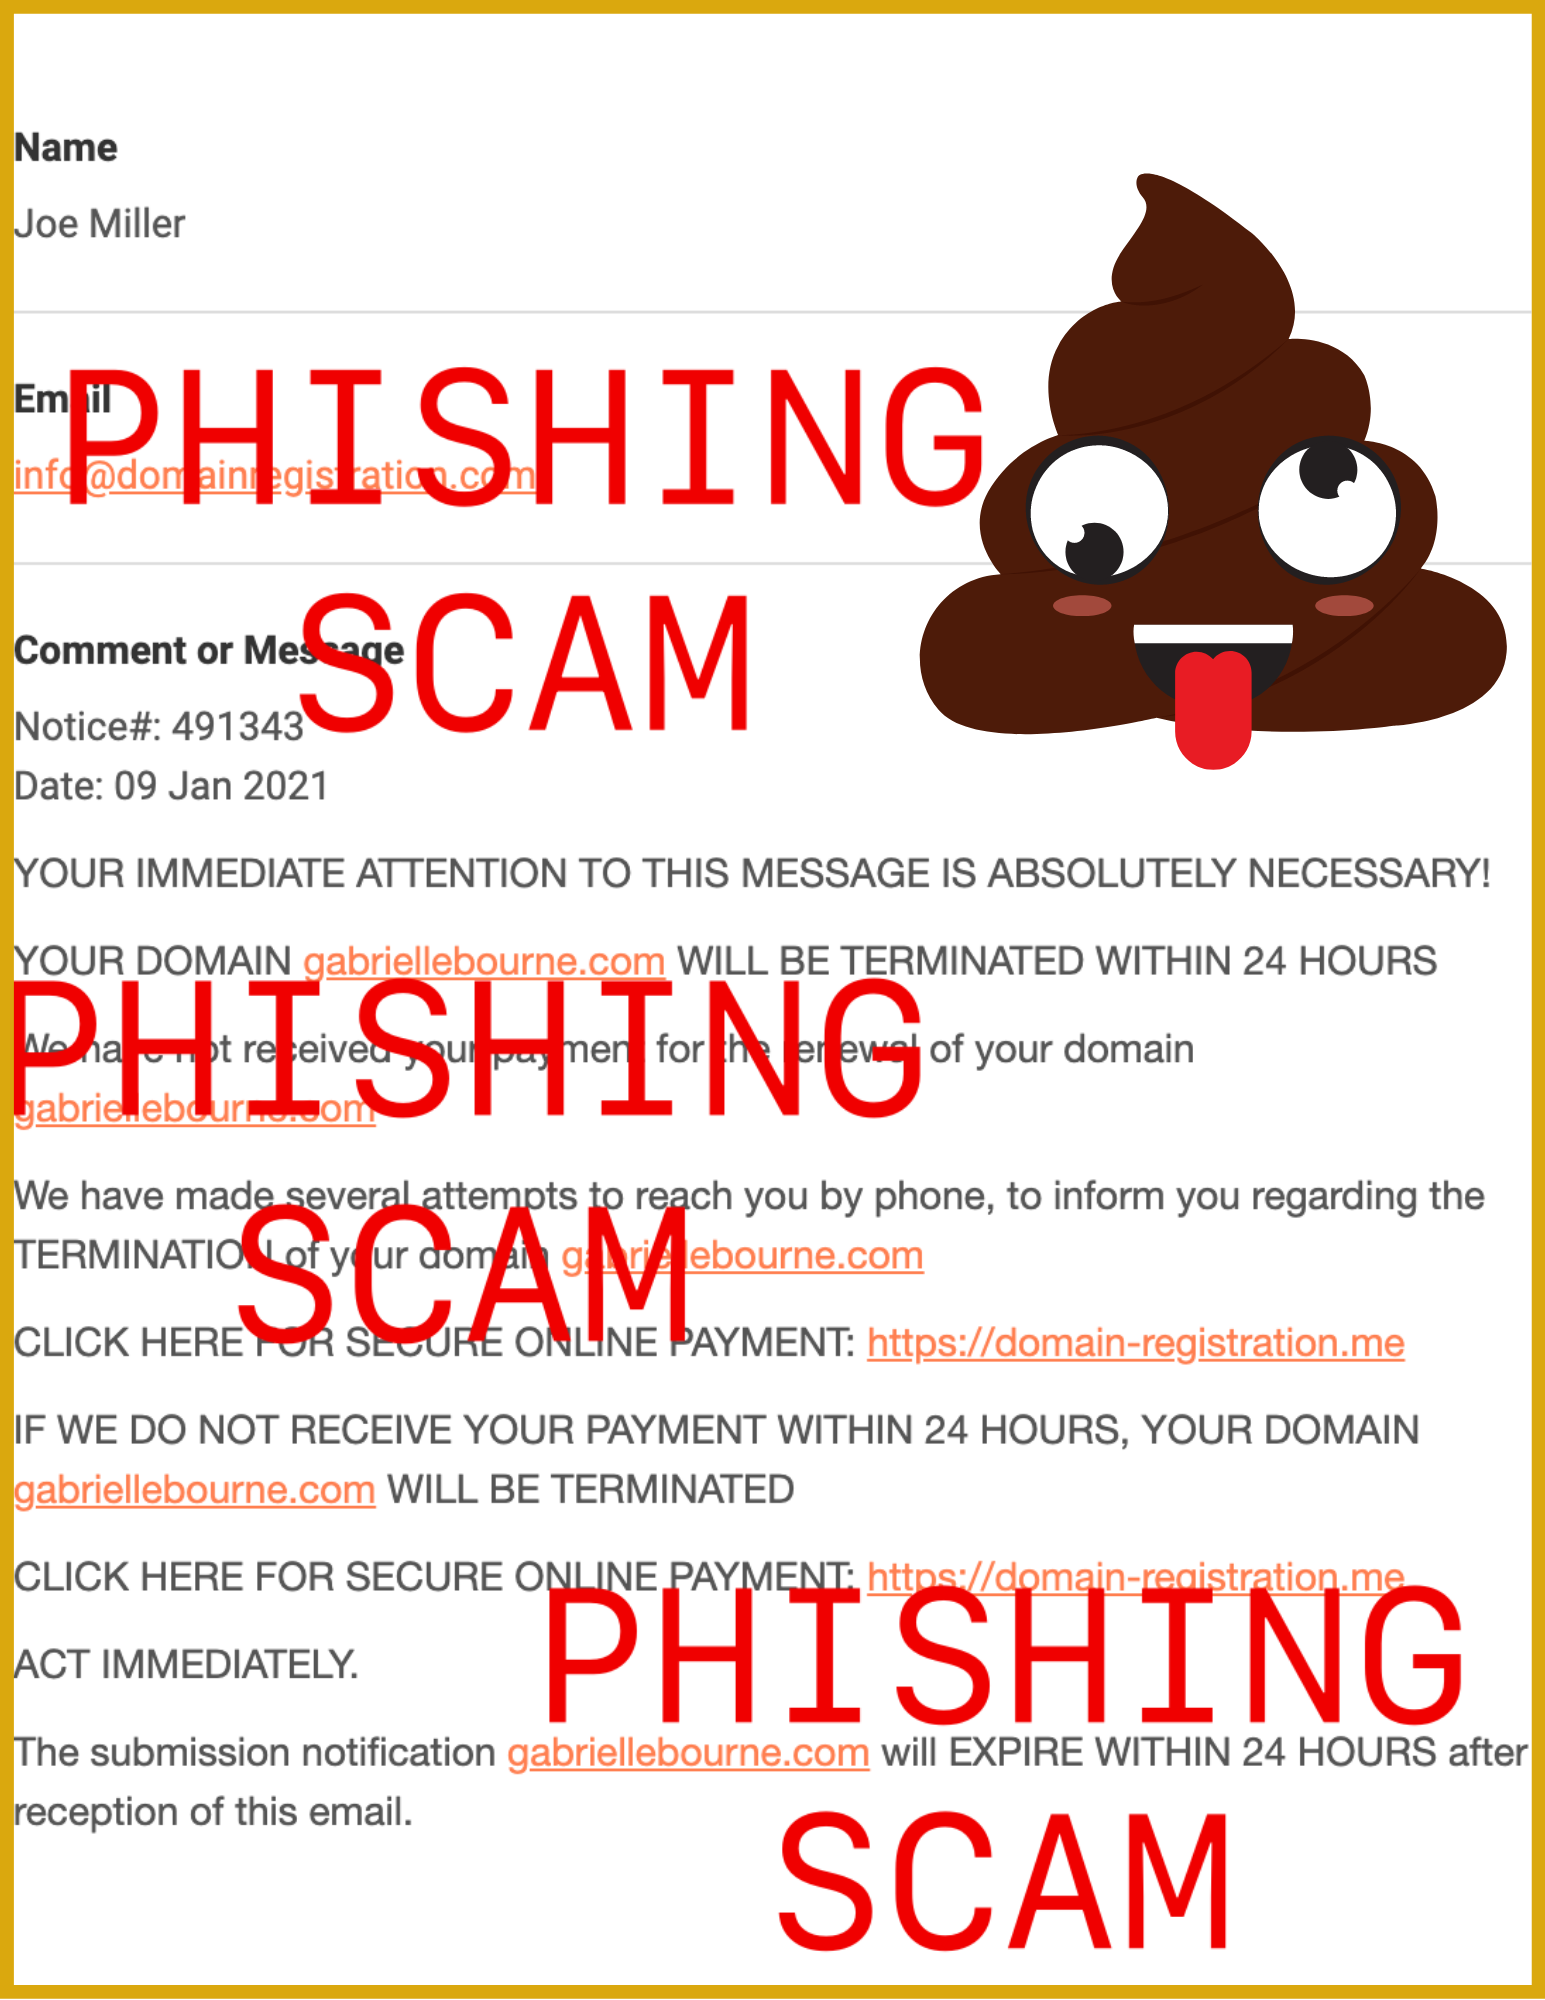 Phishing Scam (Joe Miller) - Domain Registration scam